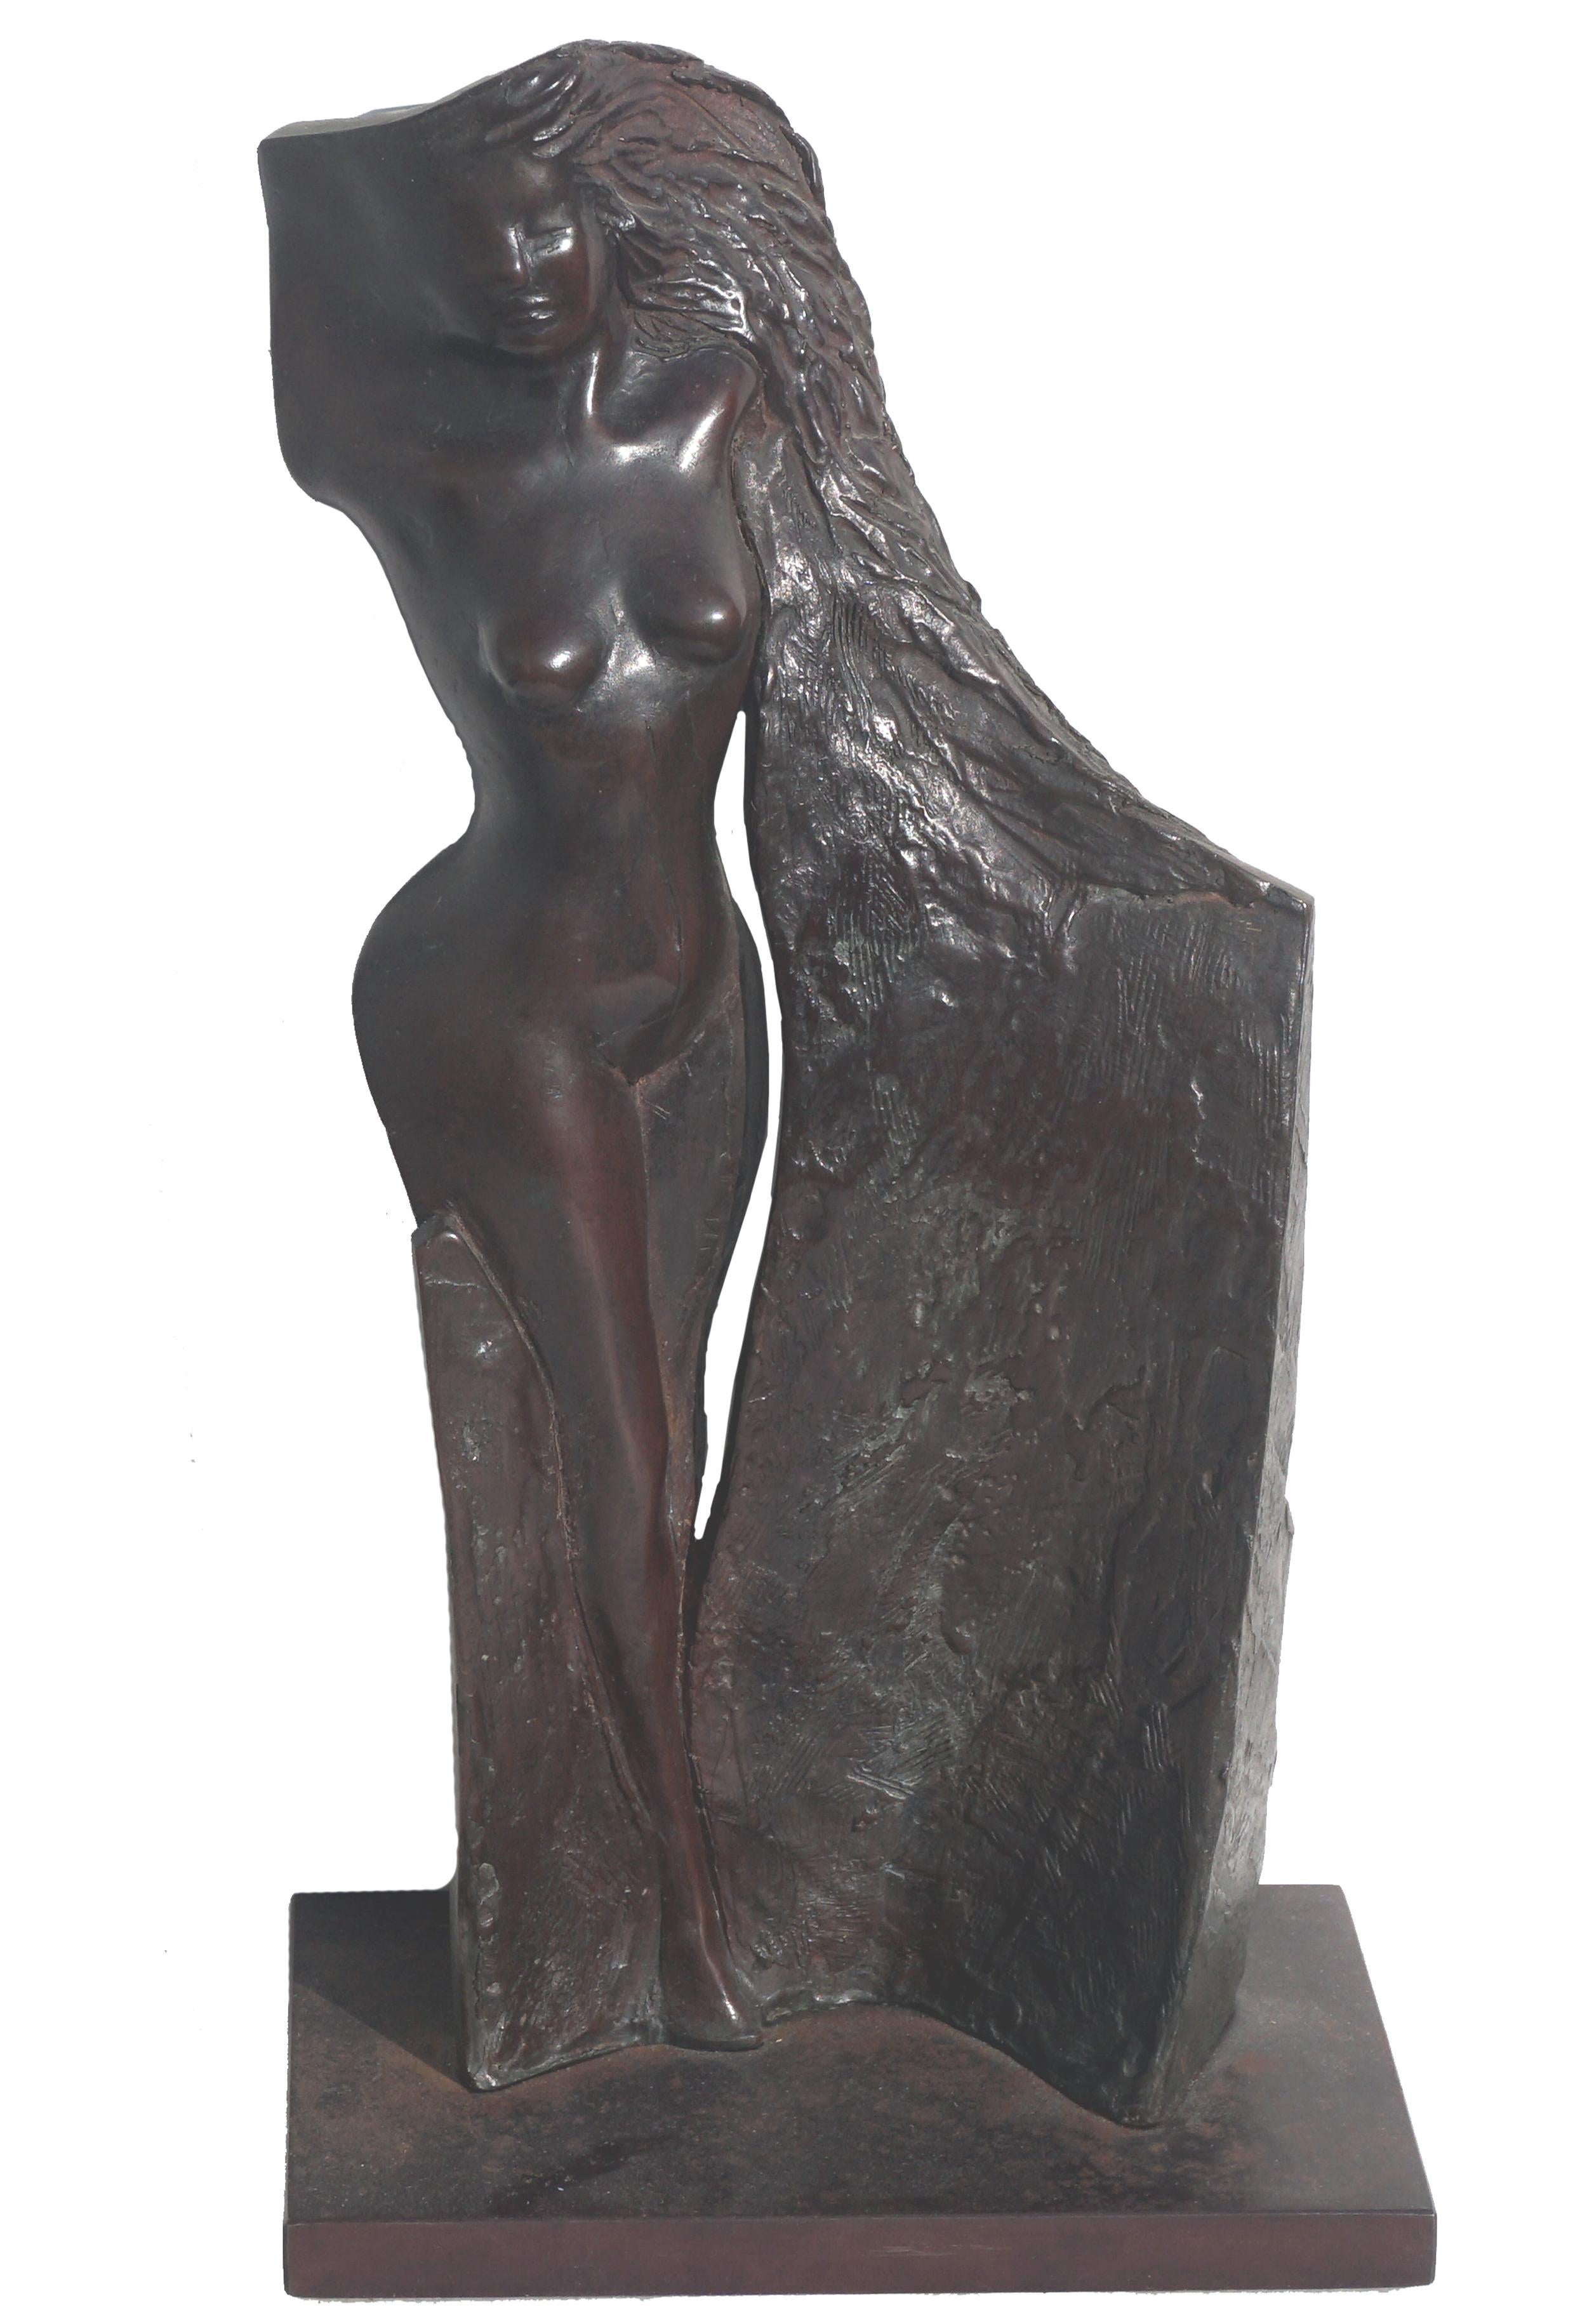 Francis Xavier Bracken Nude Sculpture – Modernistische Bronzeskulptur einer nackten Frau